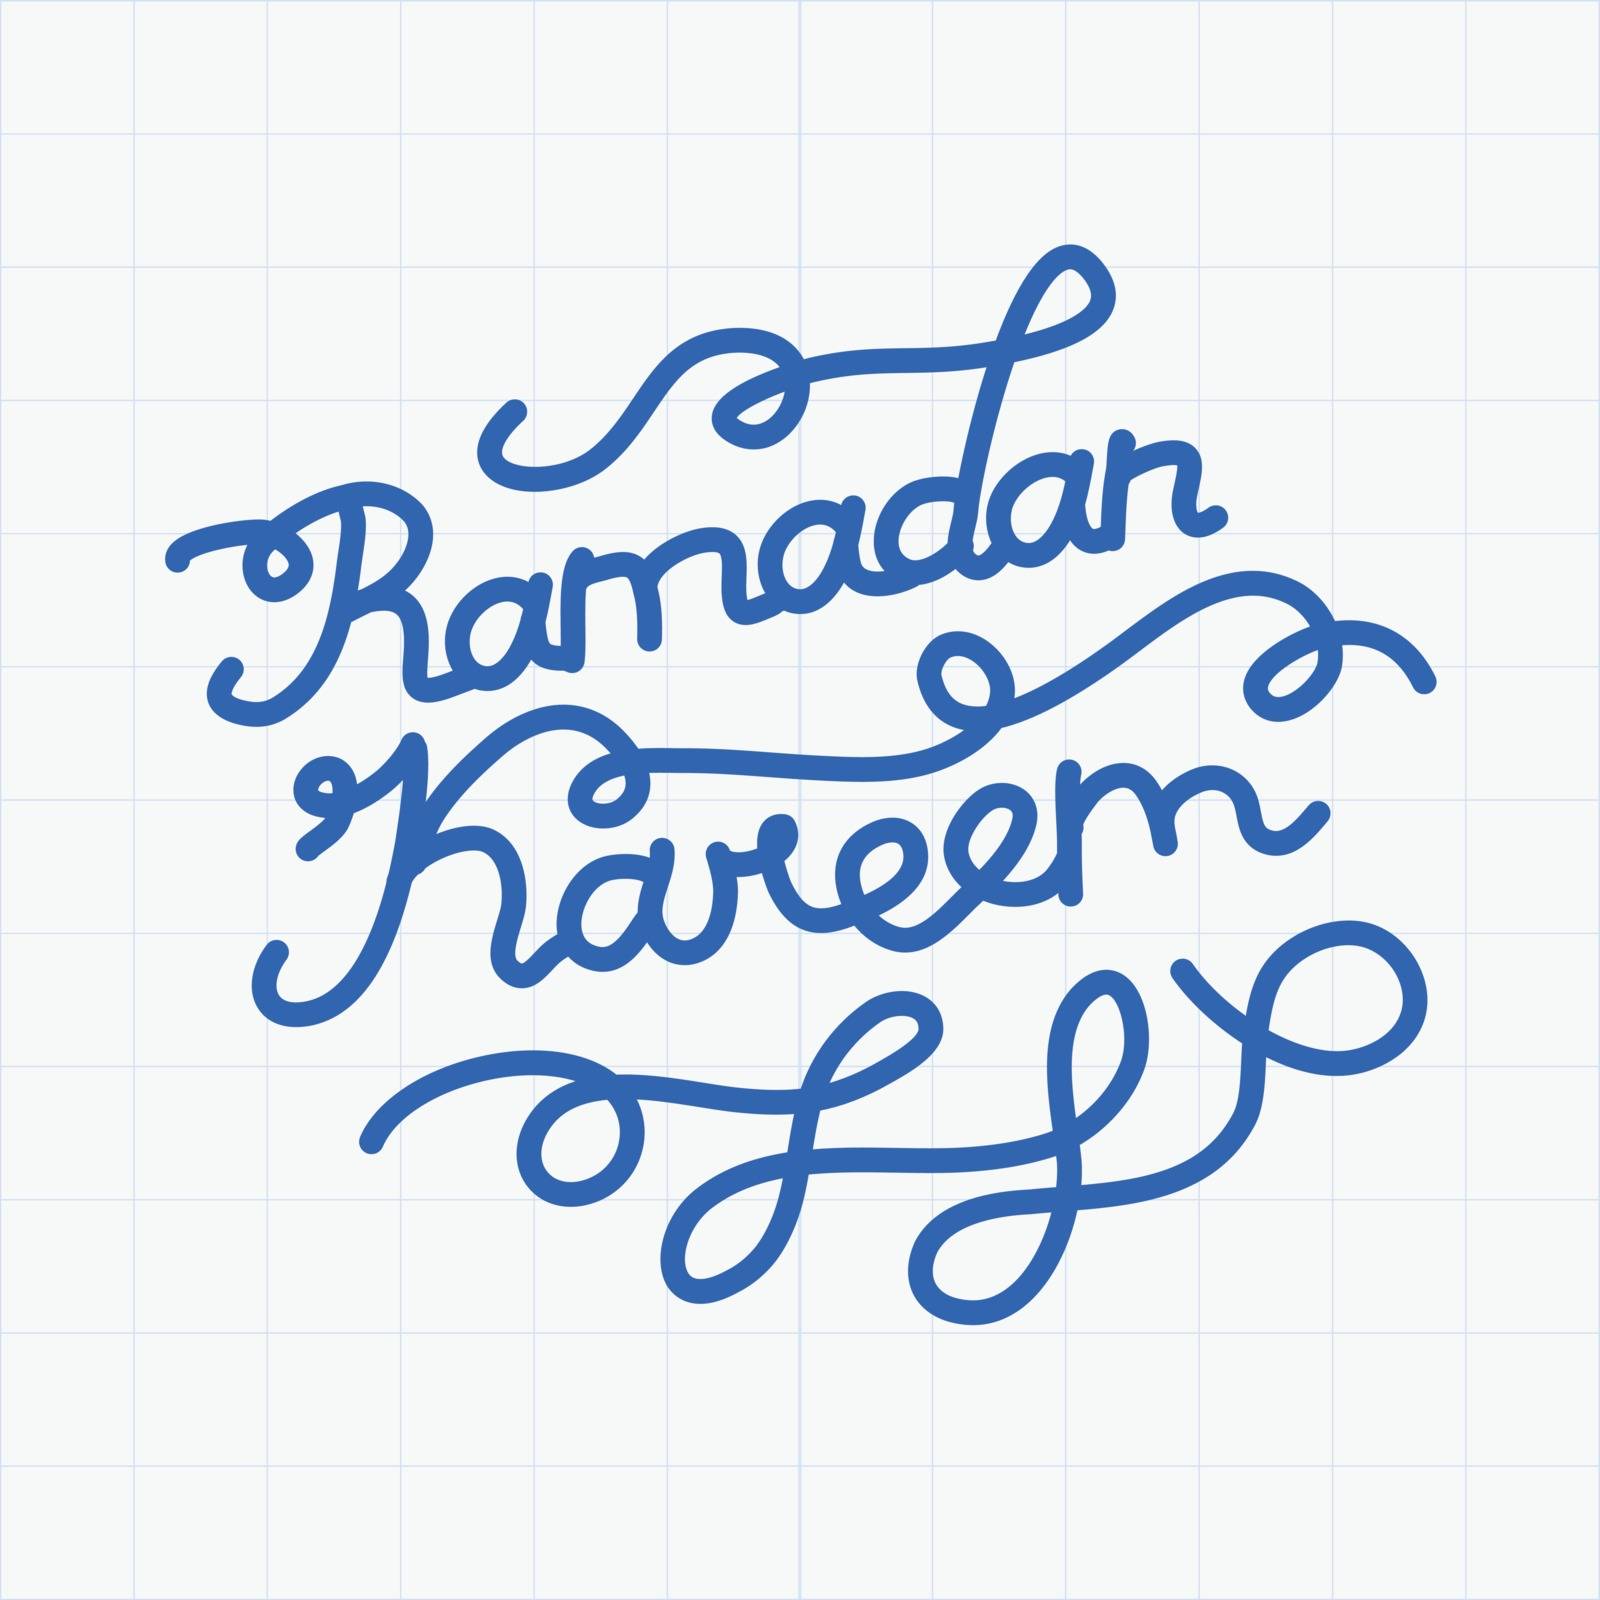 Handwritten congratulation on Ramadan Kareem. Vector illustration